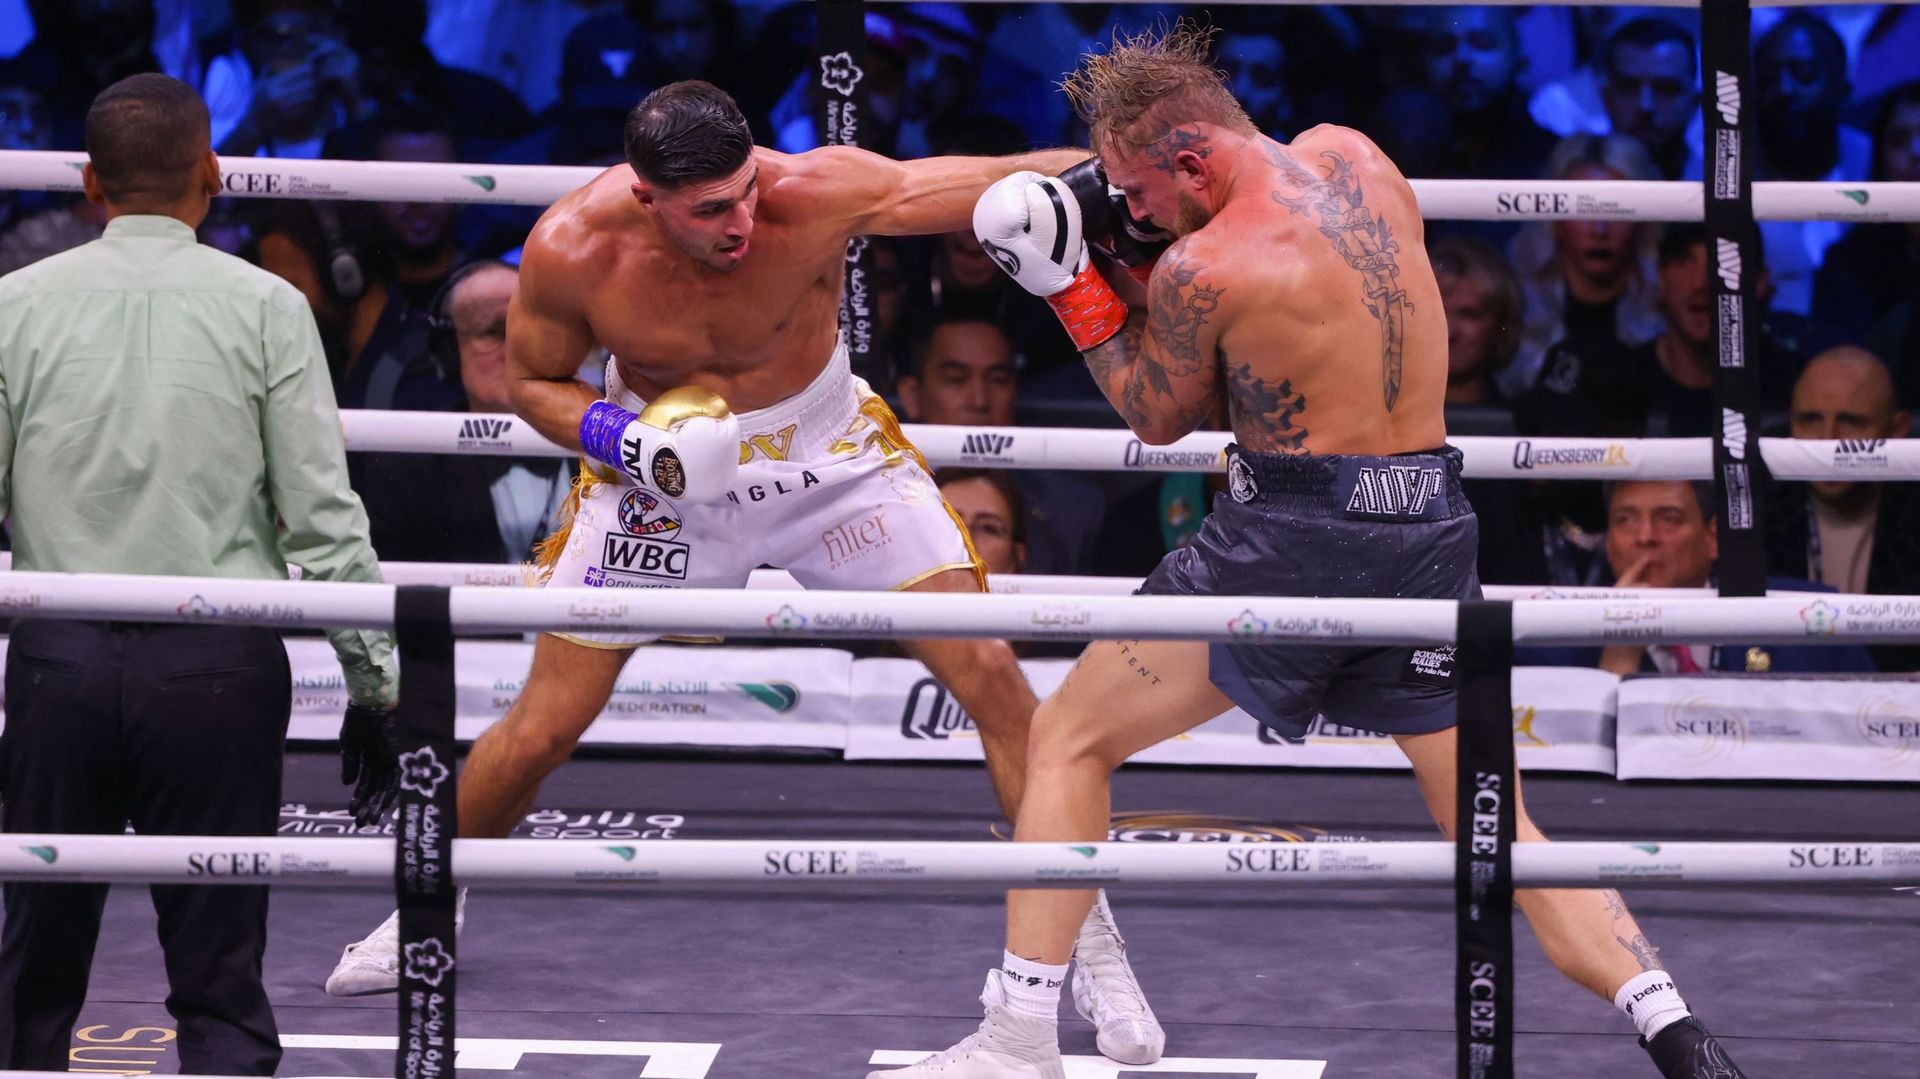 La star de téléréalité britannique Tommy Fury se bat contre le YouTuber américain Jake Paul lors d’un match de boxe à Diriyah à Riyad, en Arabie saoudite, le 27 février 2023.